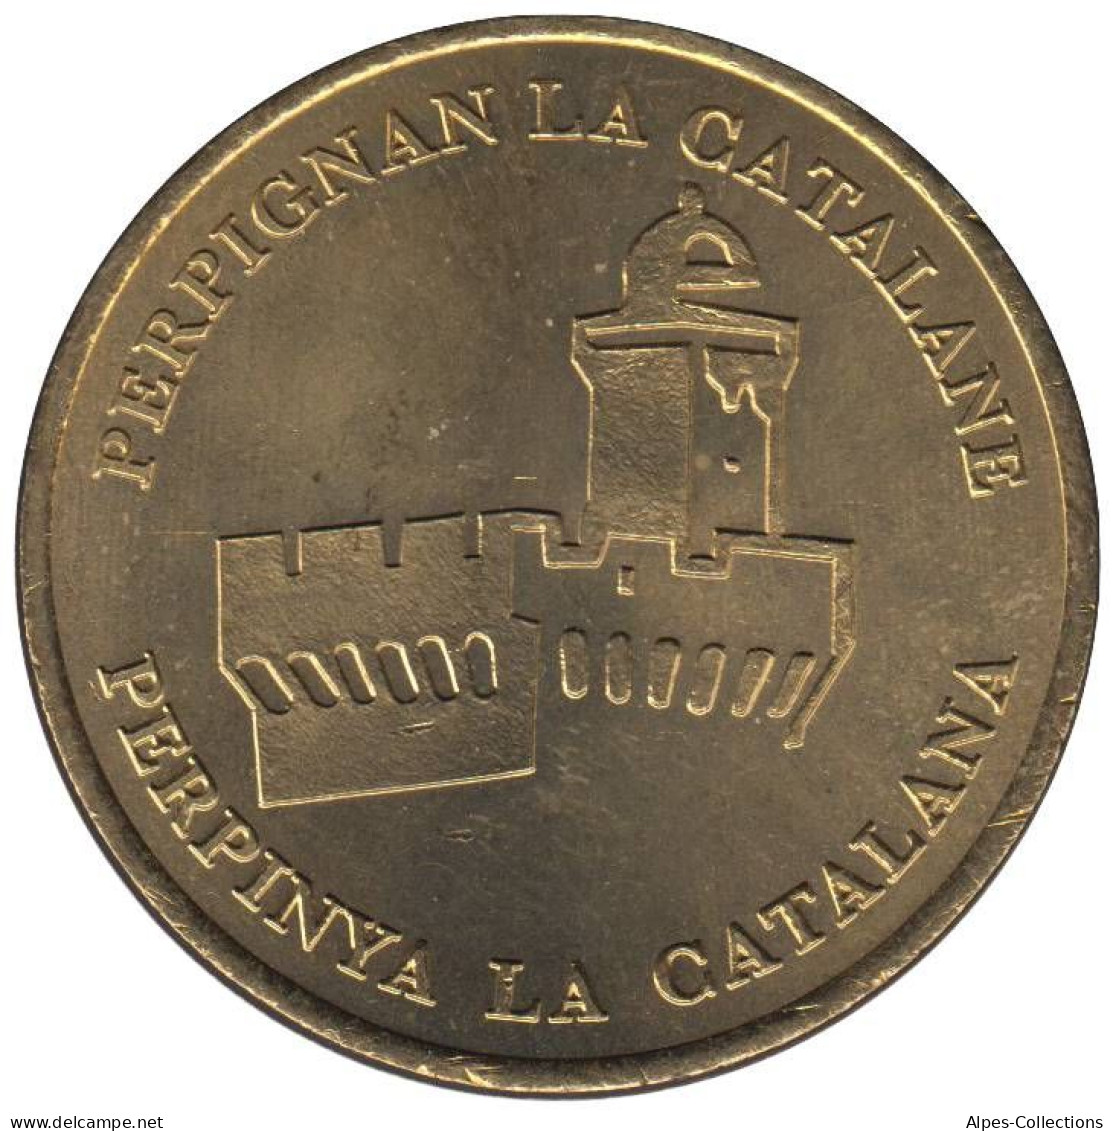 PERPIGNAN - EU0010.2 - 1 EURO DES VILLES - Réf: T538 - 1998 - Euros Of The Cities